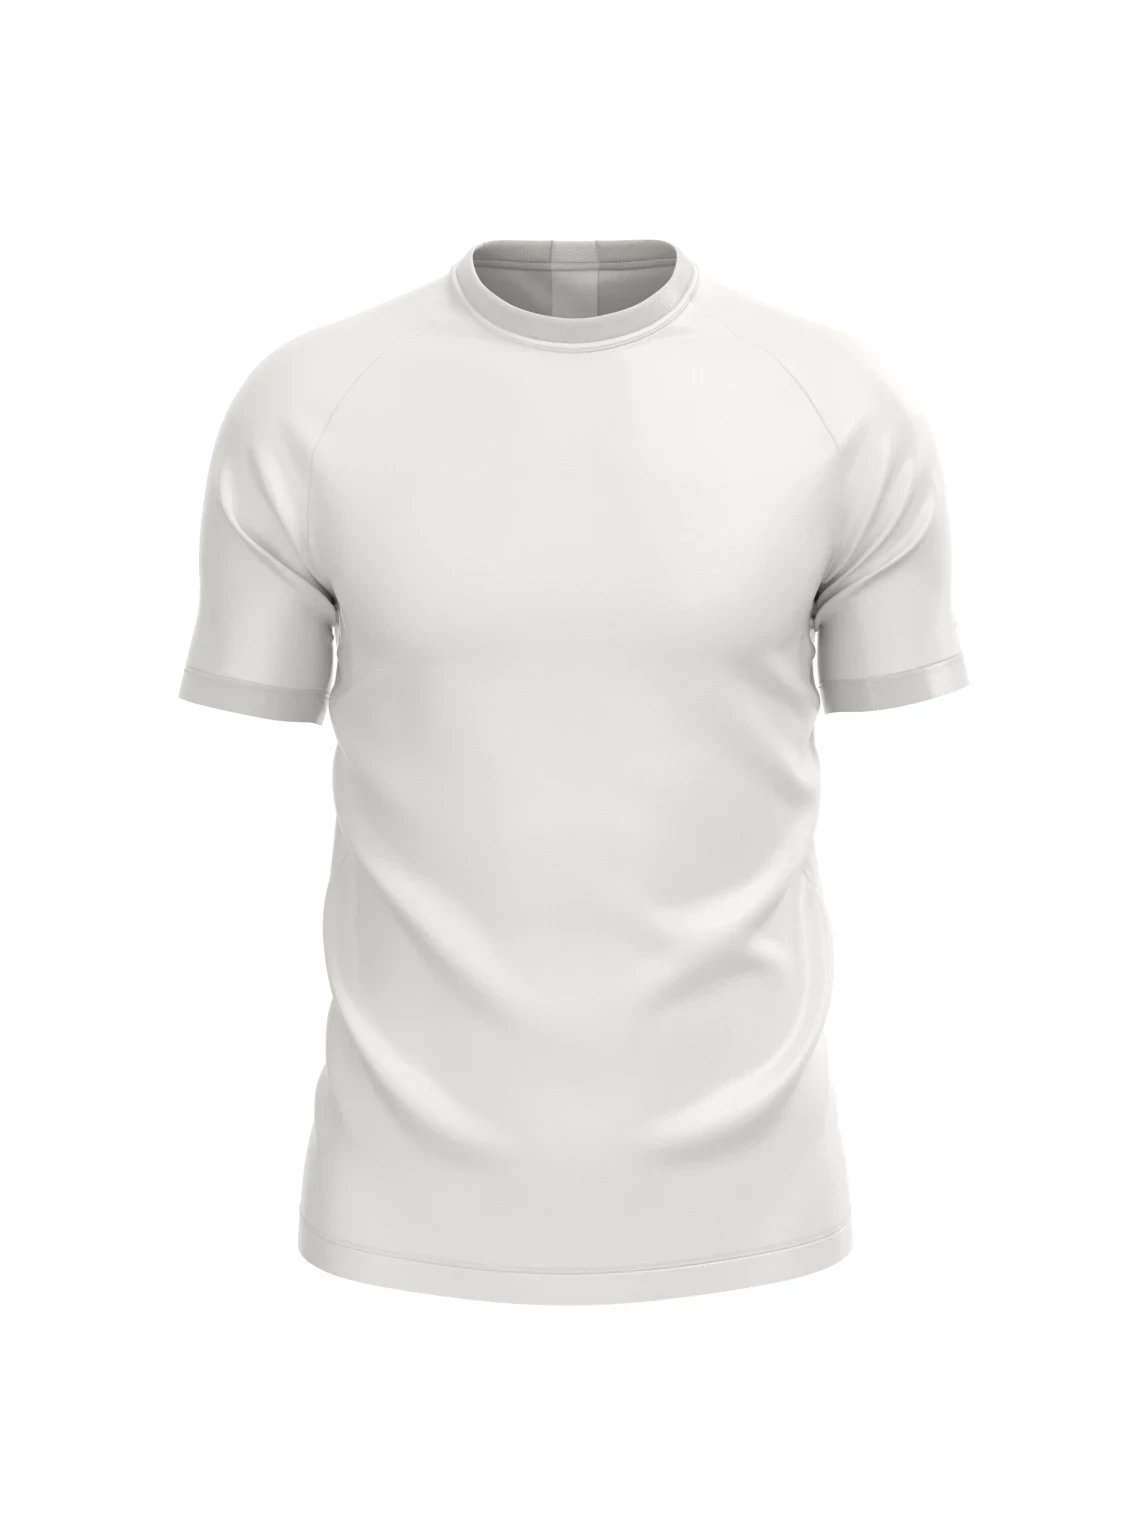 Sport-Shirt für Herren mit Aufdruck Premium Sublimation